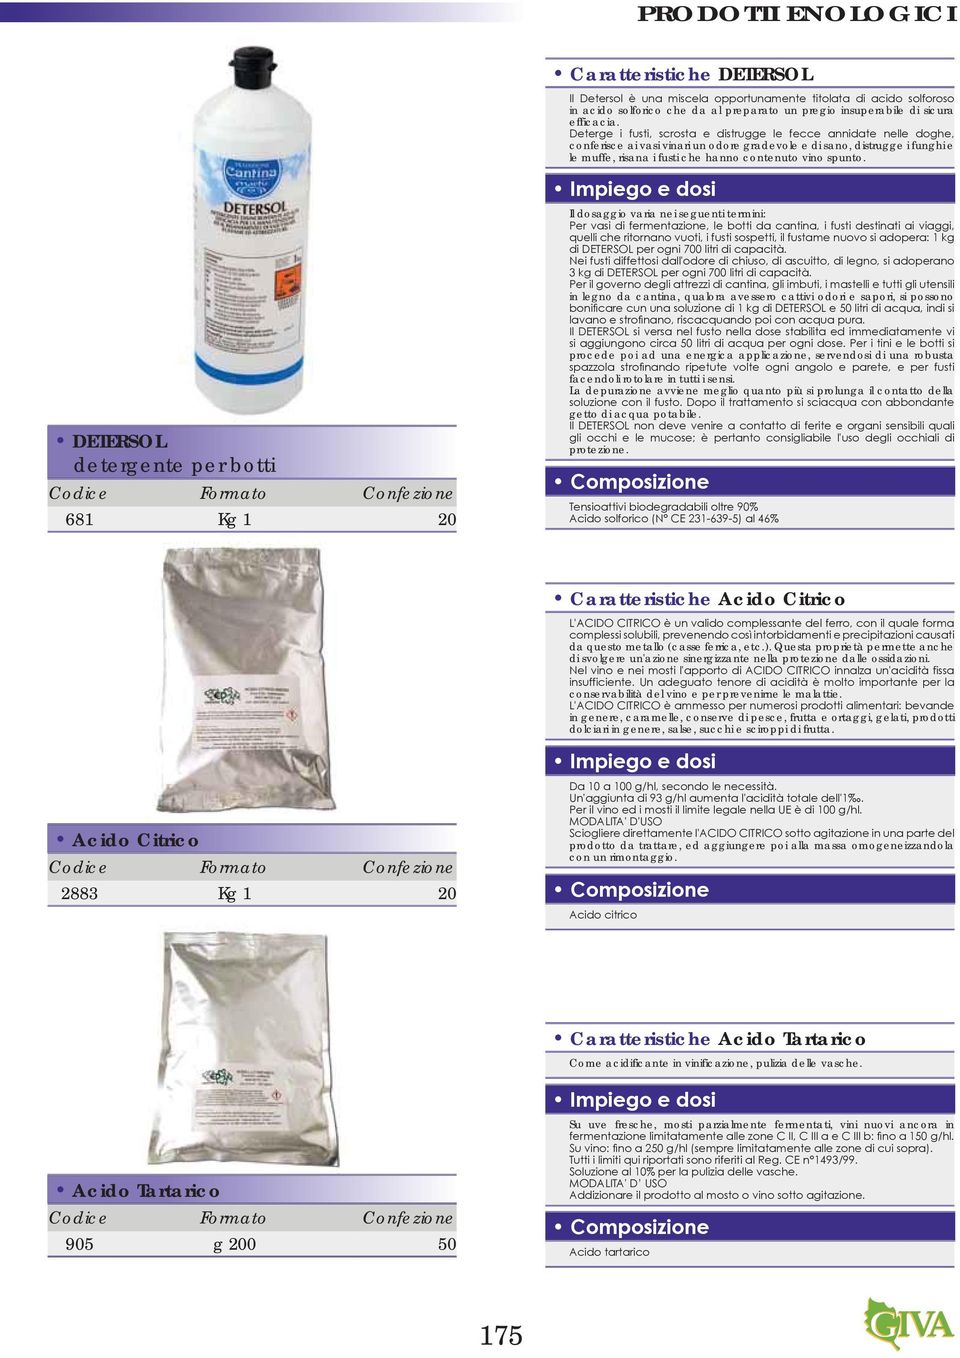 DETERSOL detergente per botti 681 Kg 1 20 Il dosaggio varia nei seguenti termini: in legno da cantina, qualora avessero cattivi odori e sapori, si possono procede poi ad una energica applicazione,